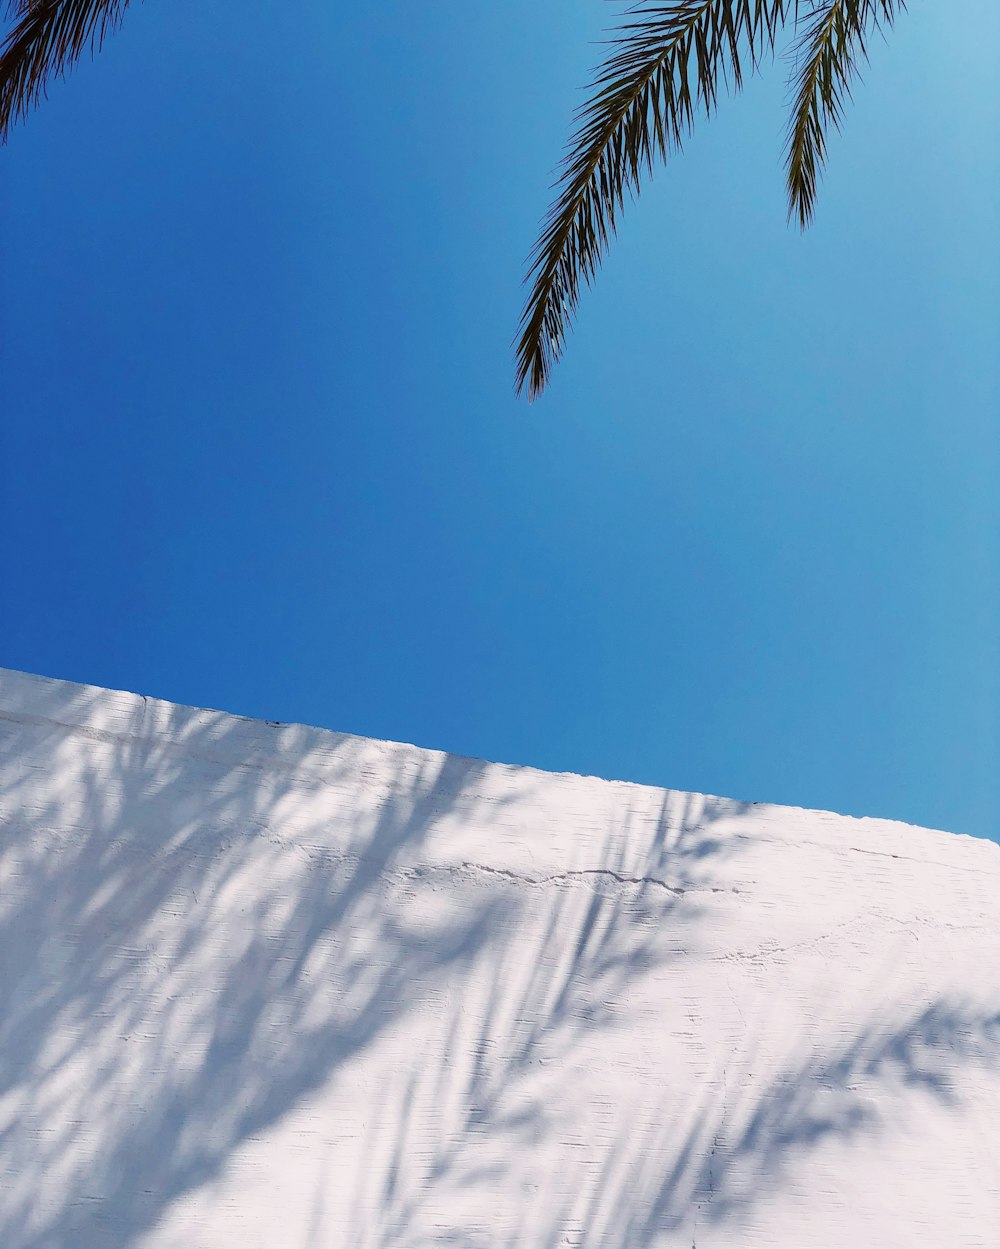 palmeira verde no chão coberto de neve sob o céu azul durante o dia